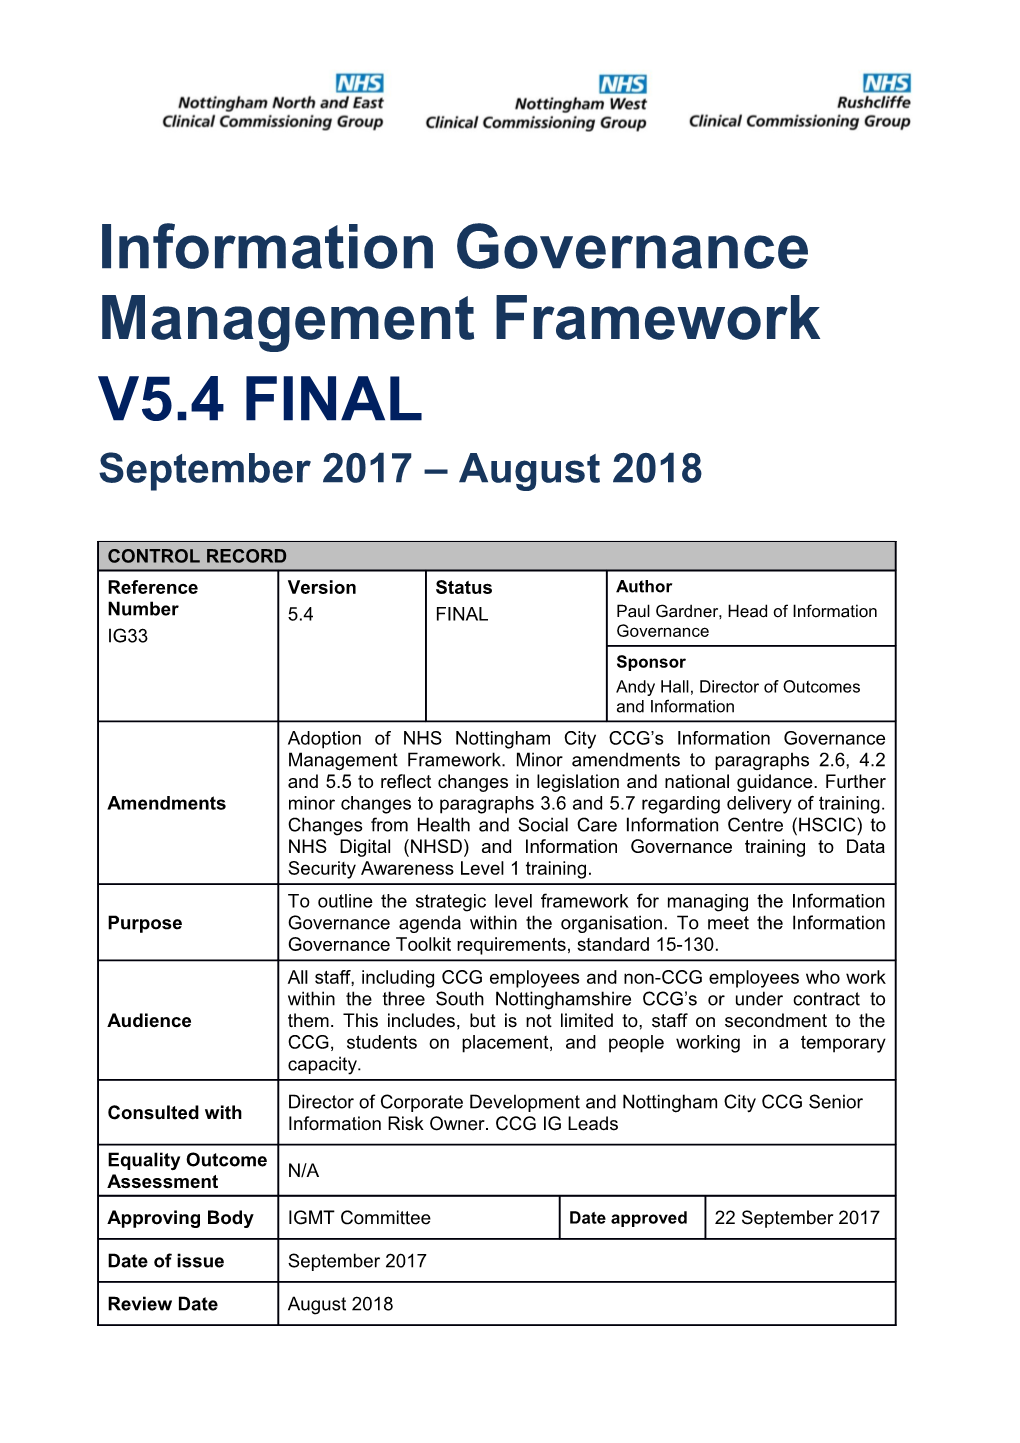 Information Governance Management Framework